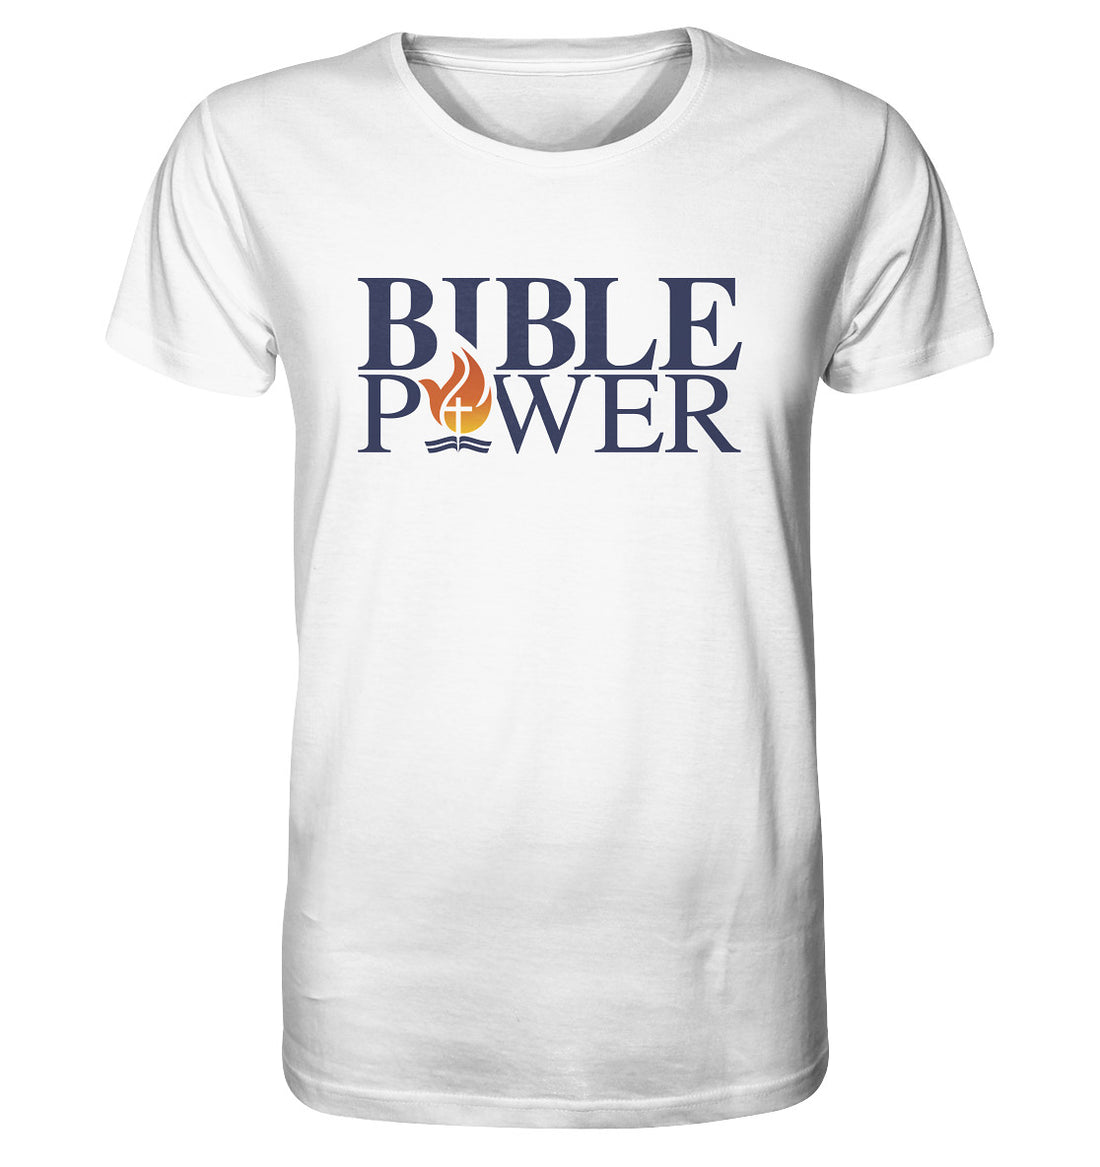 Bible Power Logo - Organic Shirt